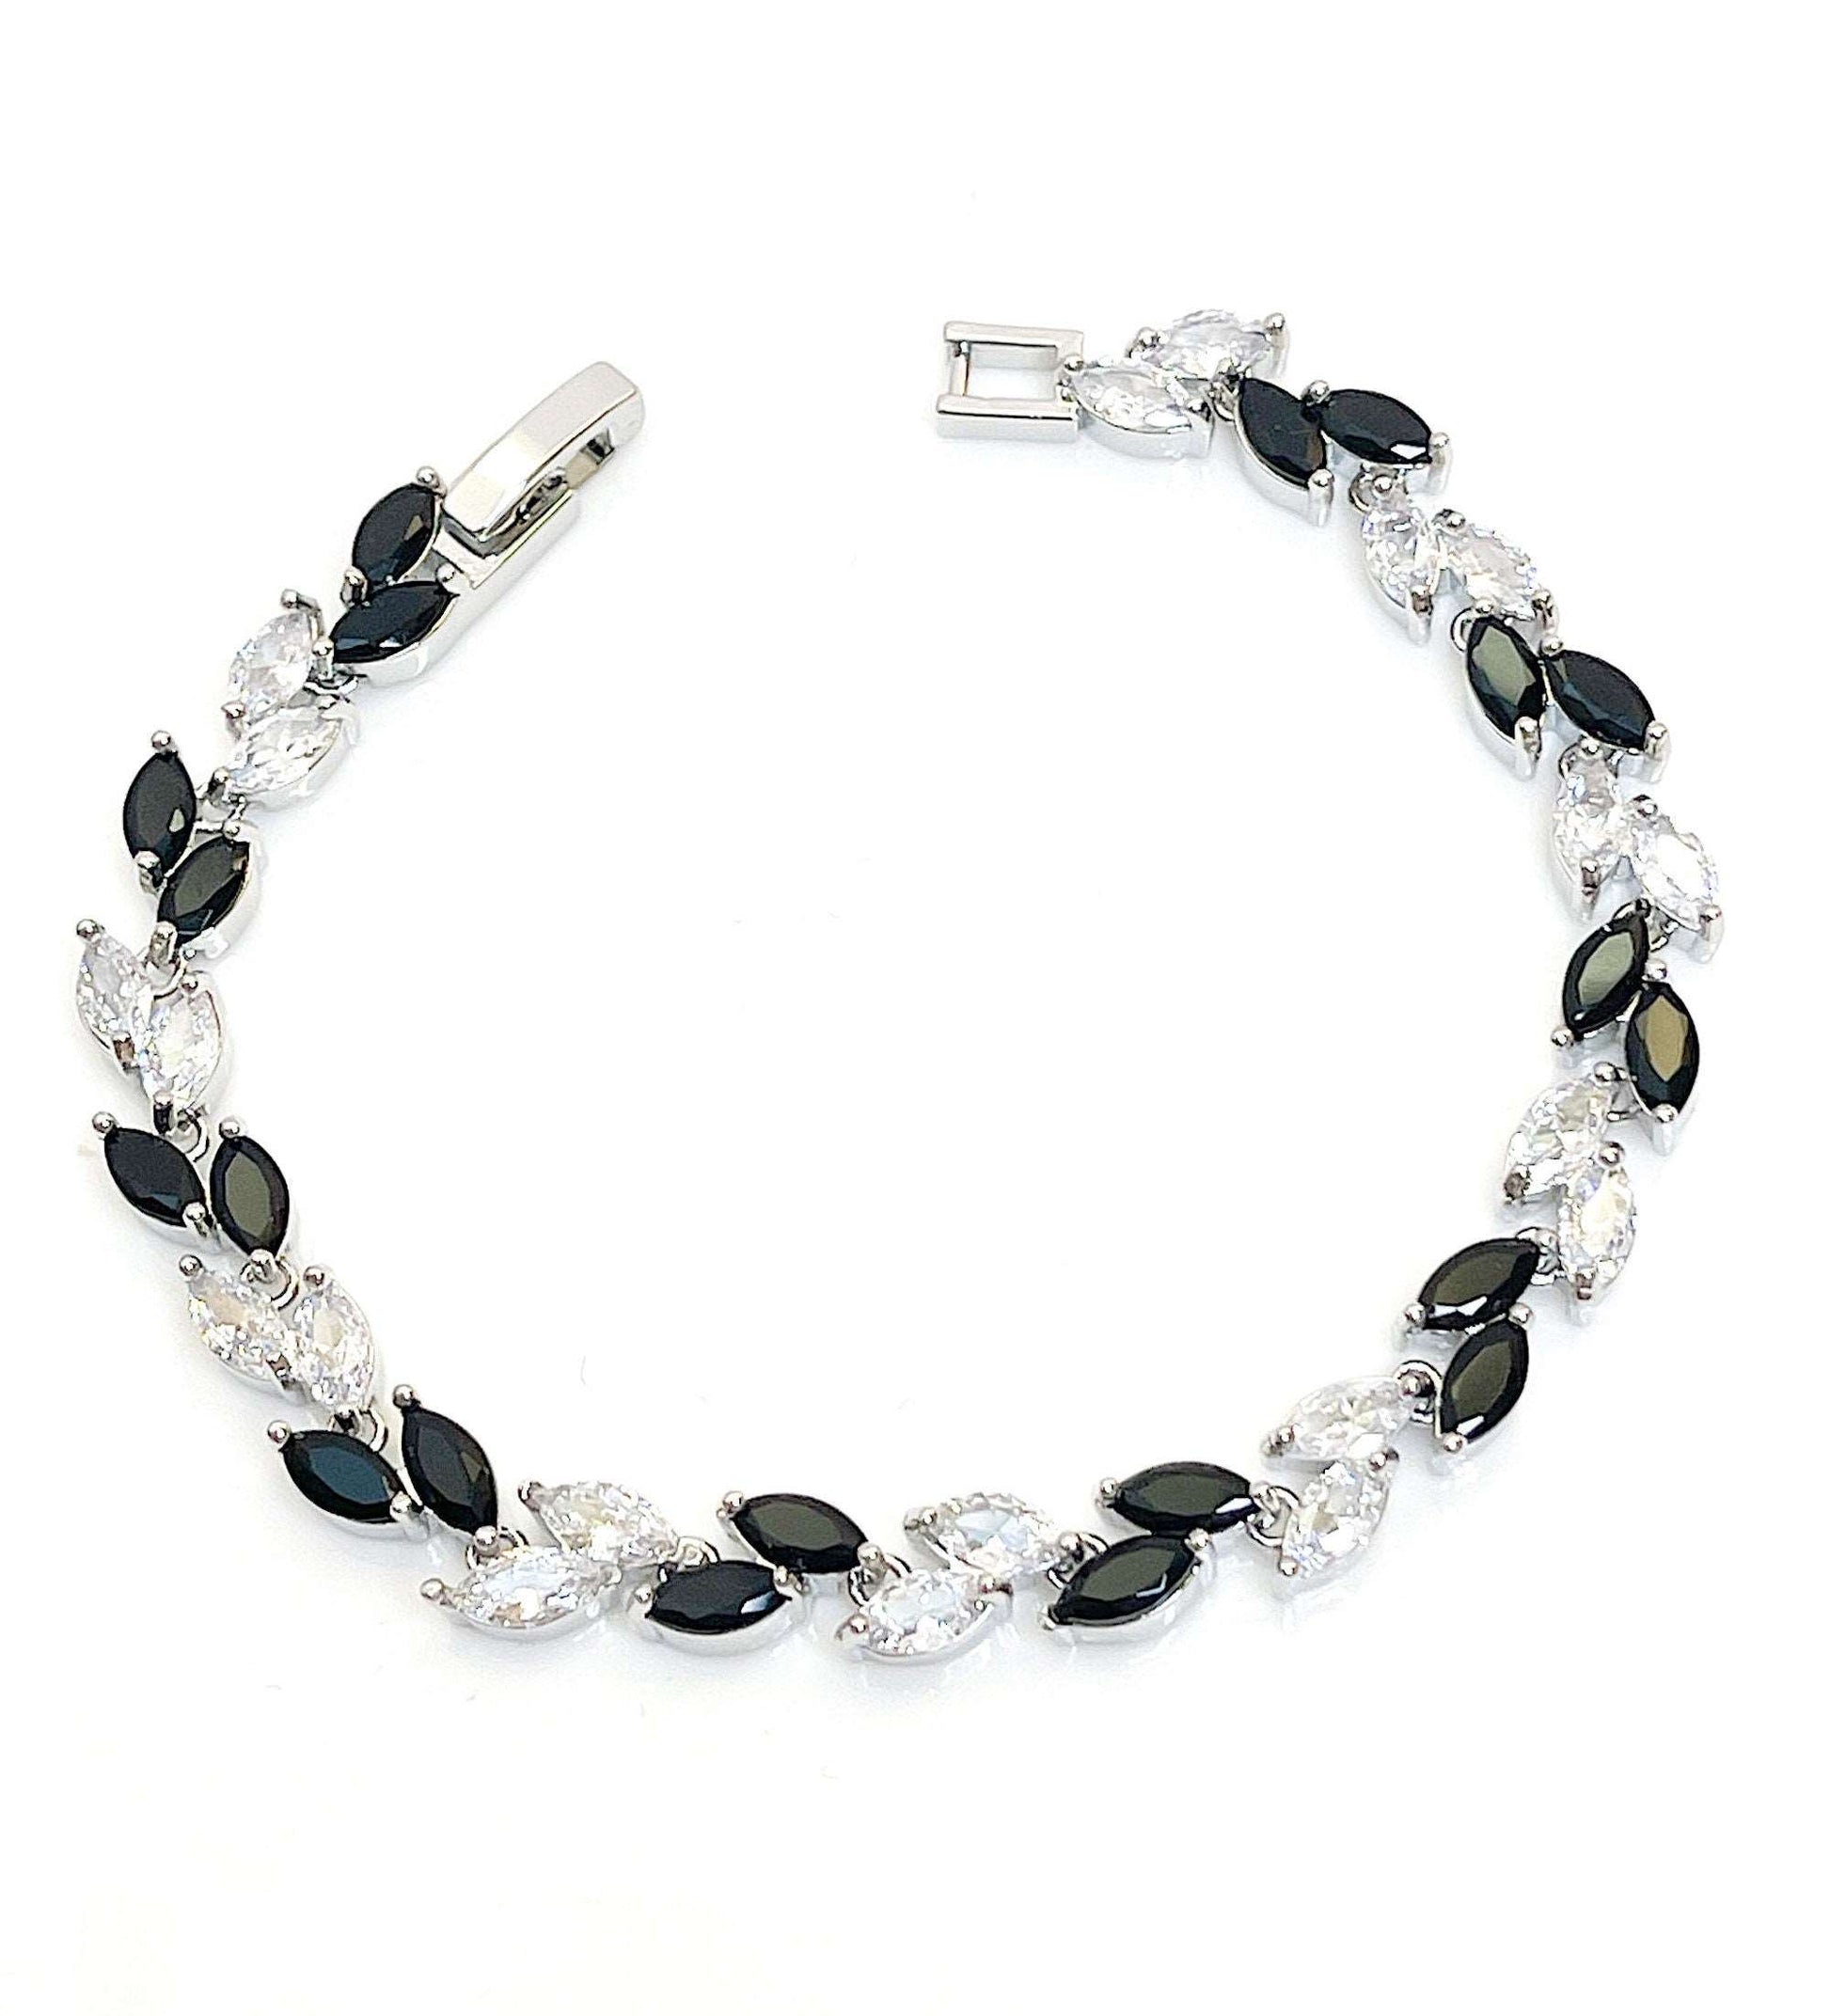 Black Clear Leaf CZ Crystal Bracelet | Silver Plated | Adjustable